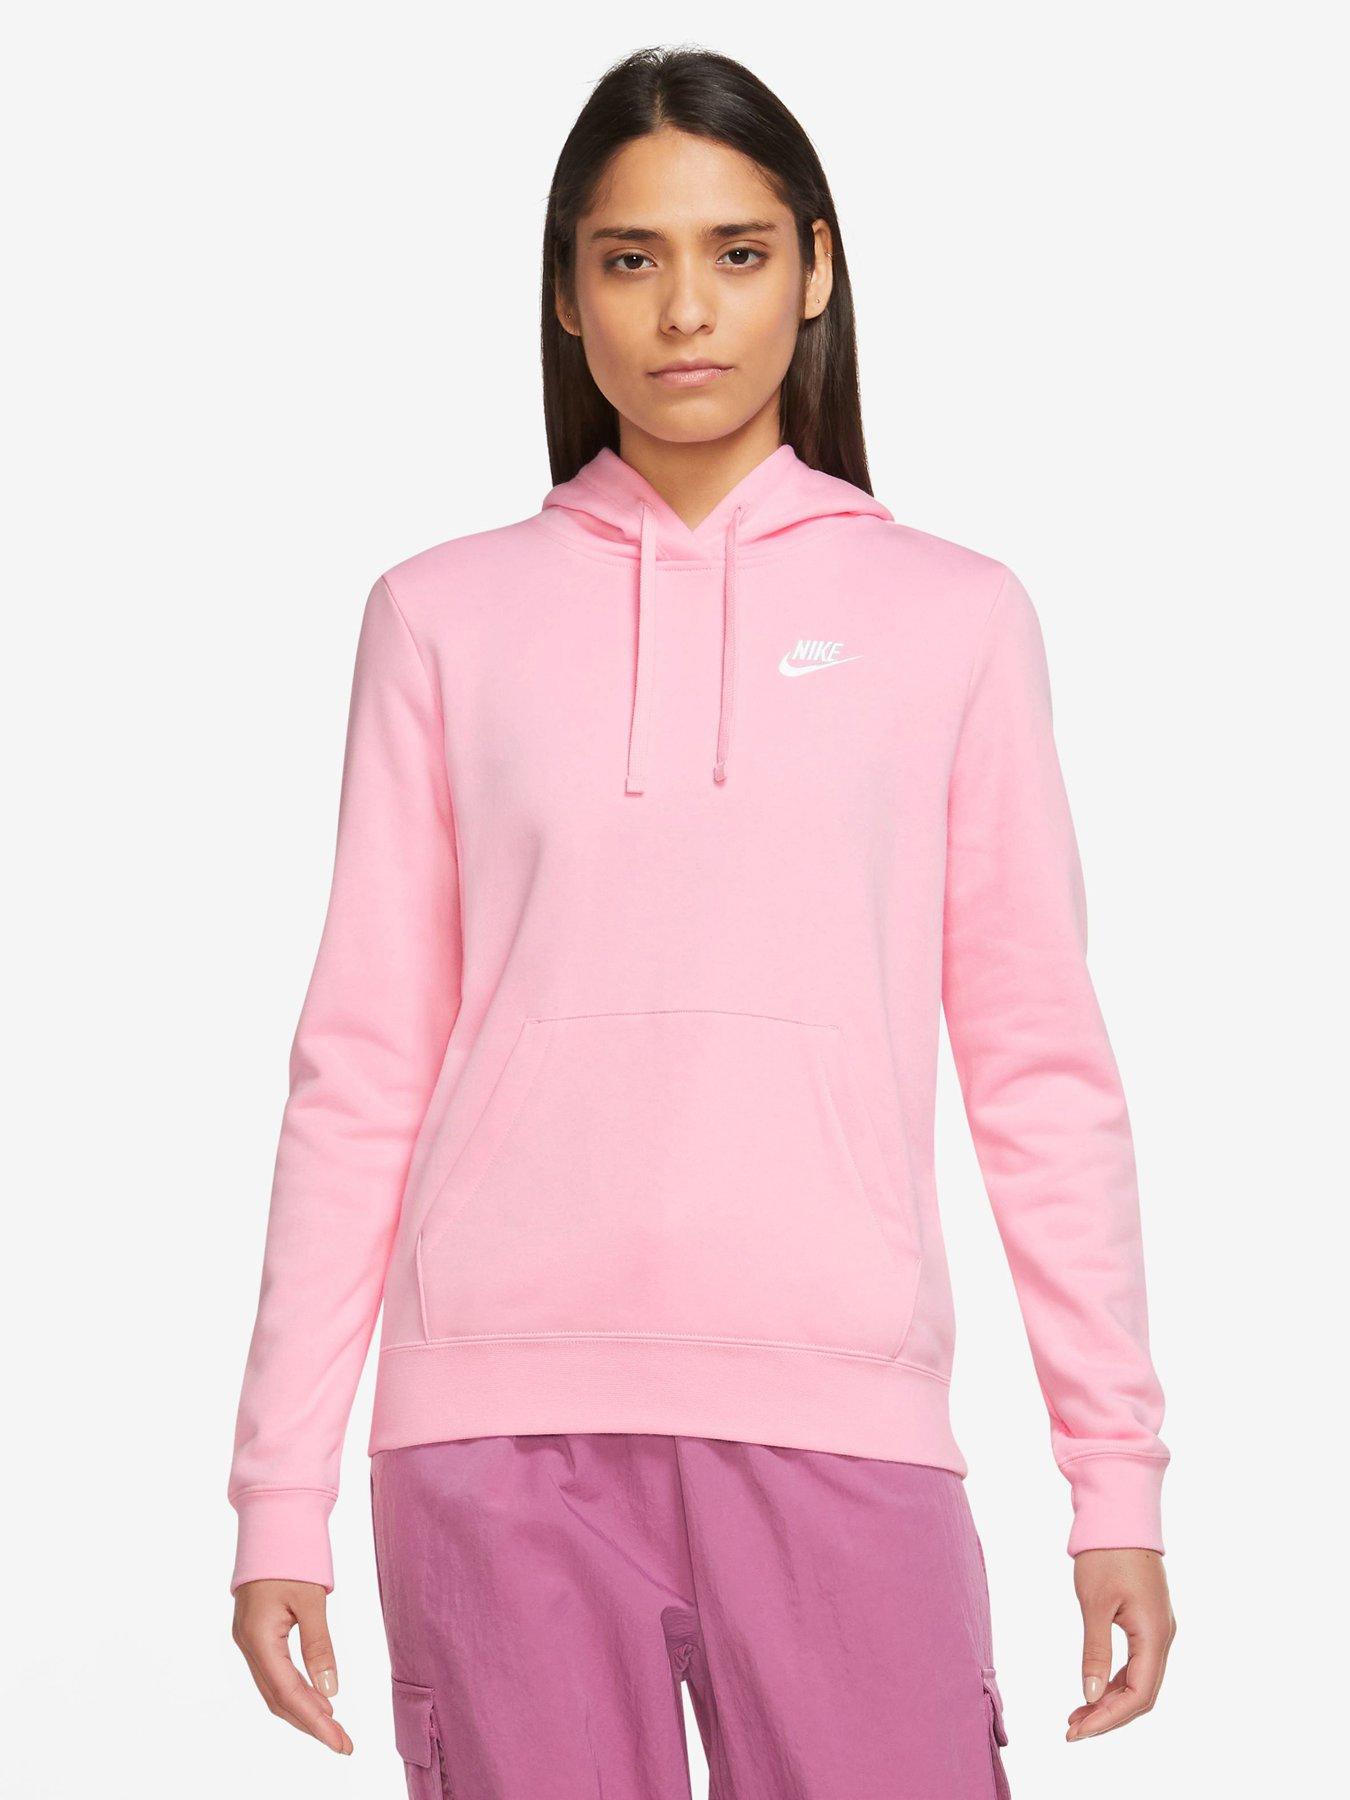 Women's Nike Sweatshirts & Zip Up | Very.co.uk